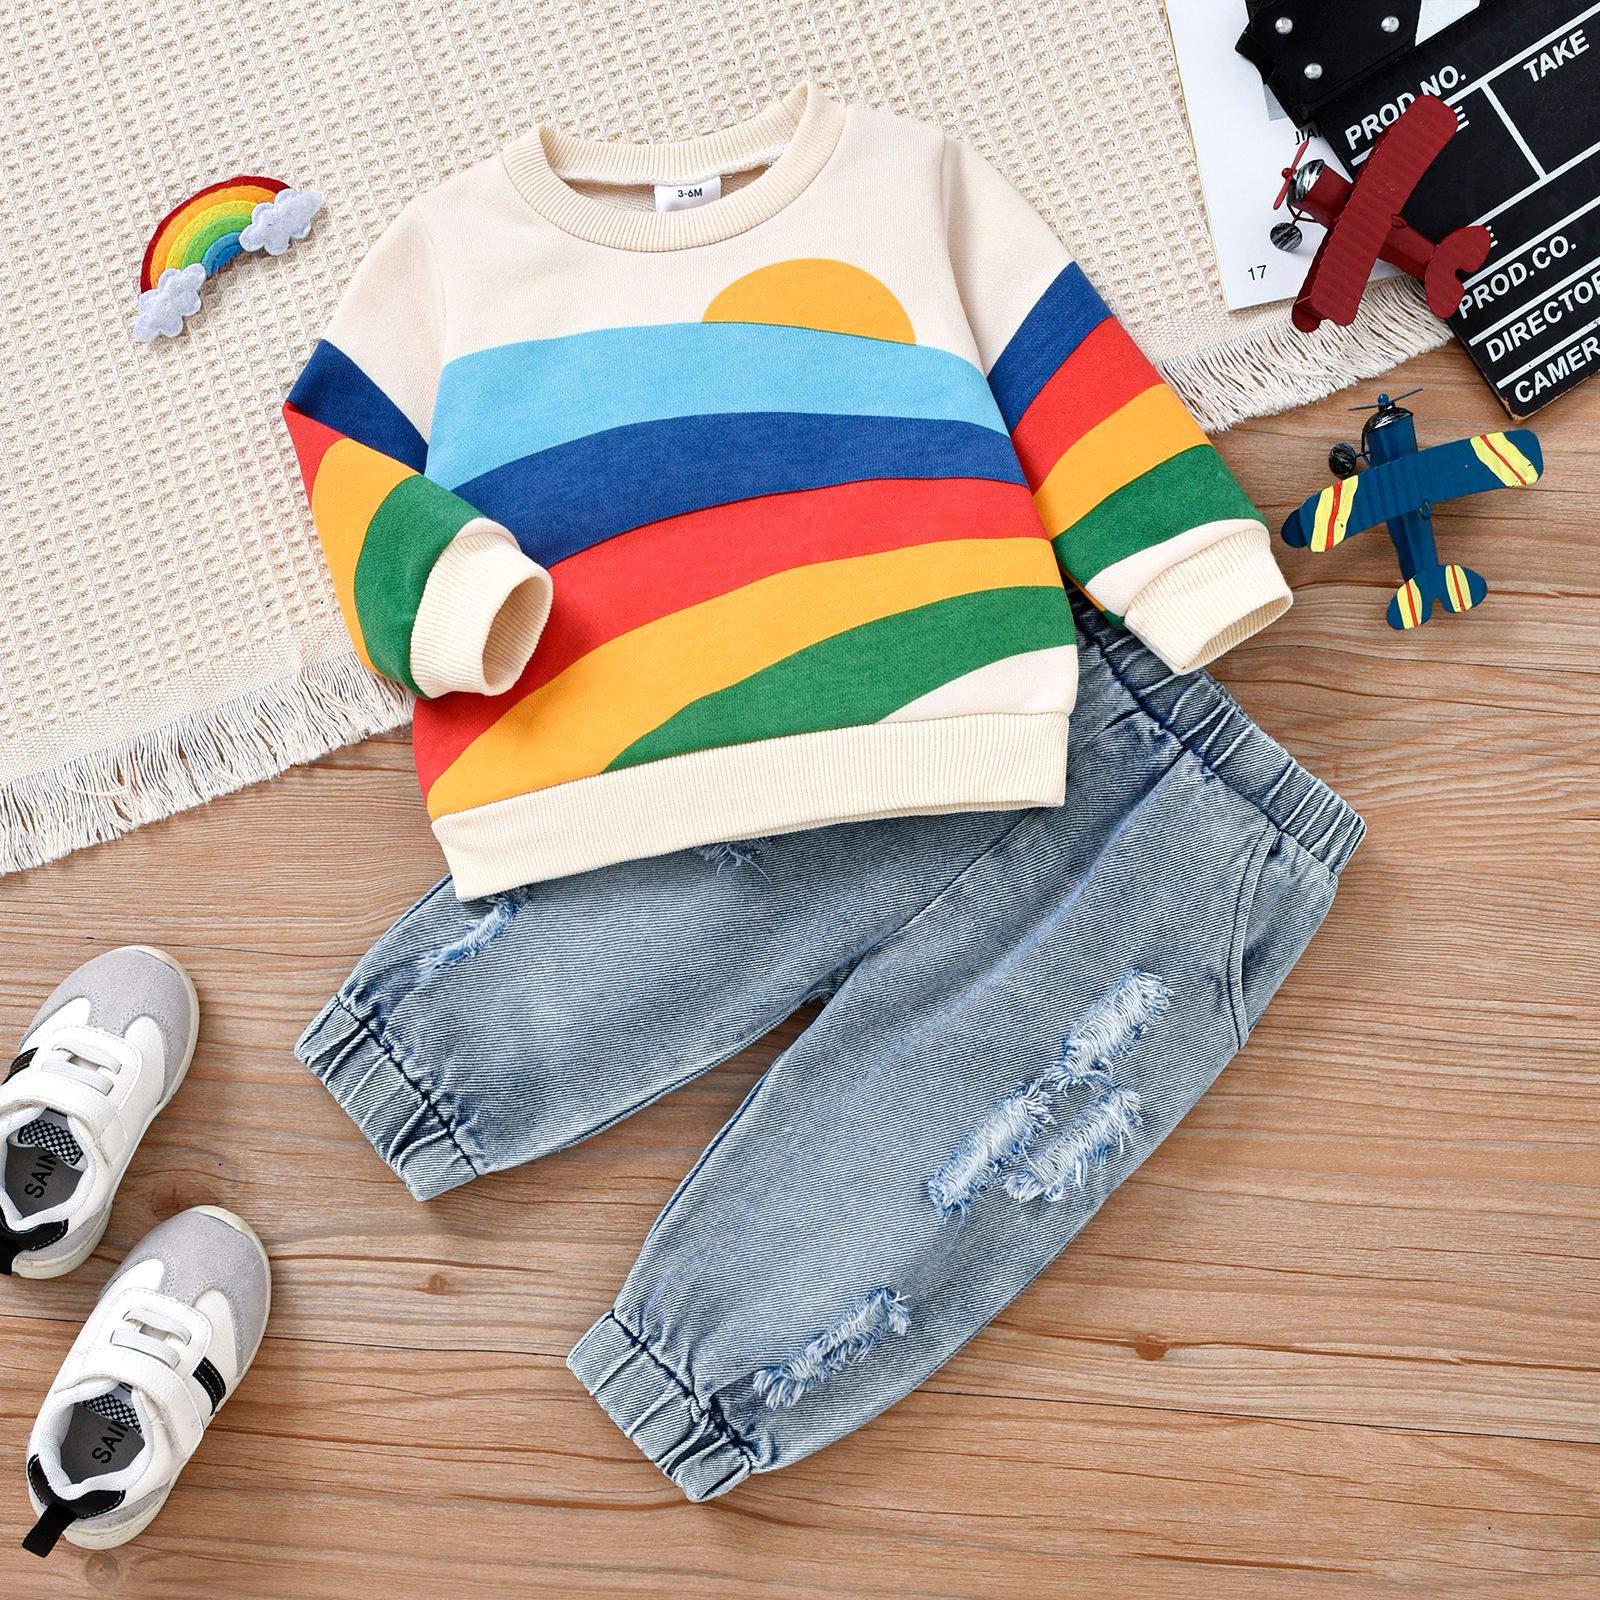 2 件裝男嬰彩虹長袖運動衫和 100% 棉牛仔布破洞牛仔褲套裝